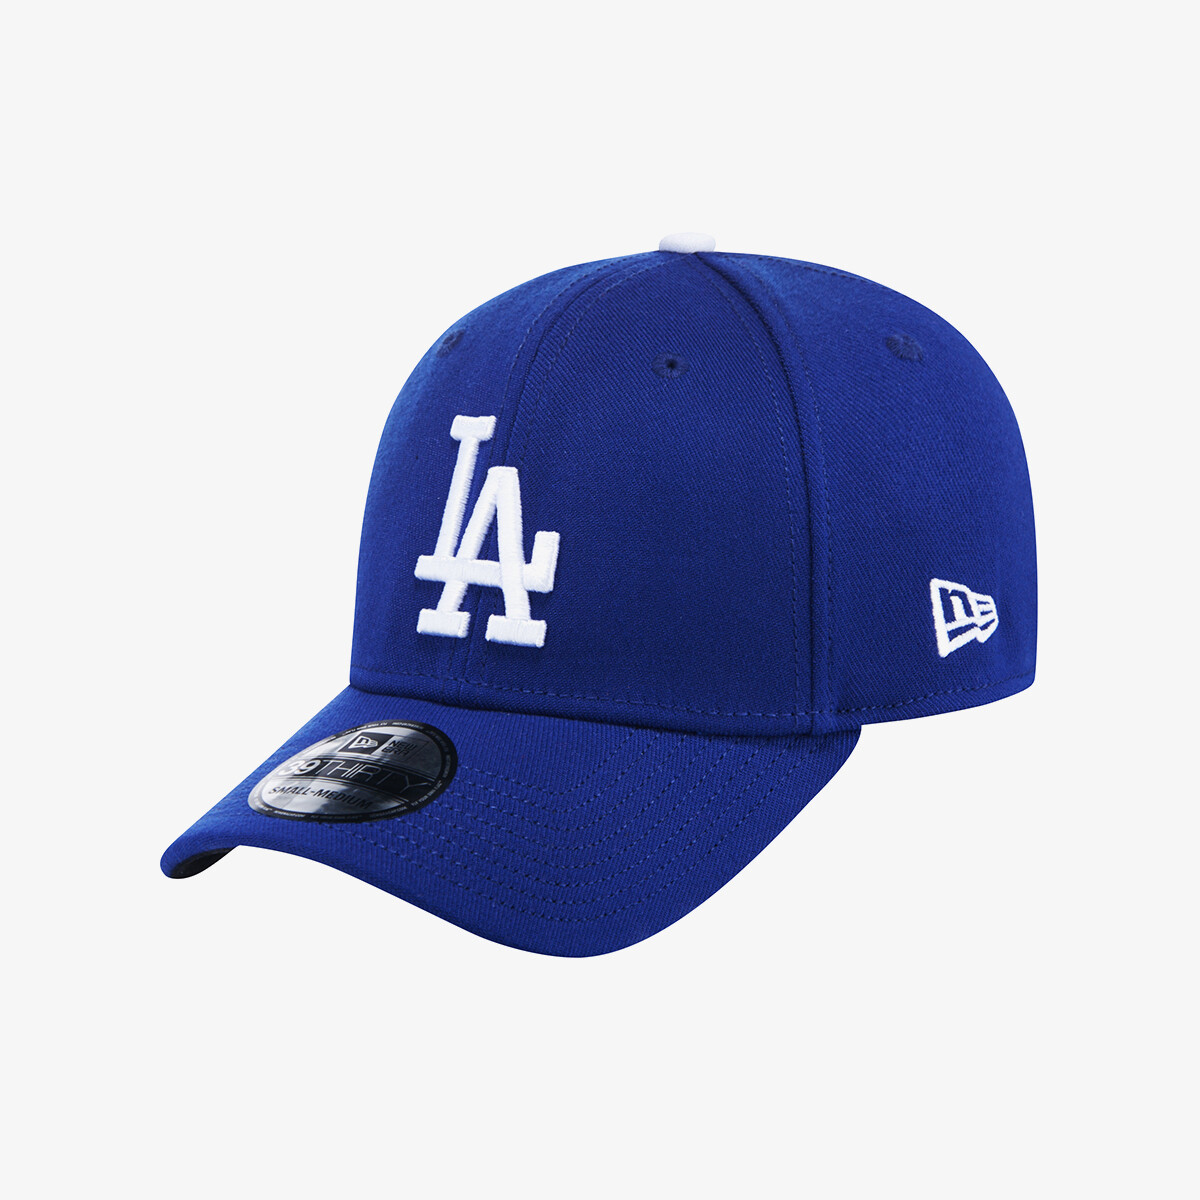 Кепка "LA Dodgers Team Classic Stretch Fit Cap", 39THIRTY, Blue, New Era